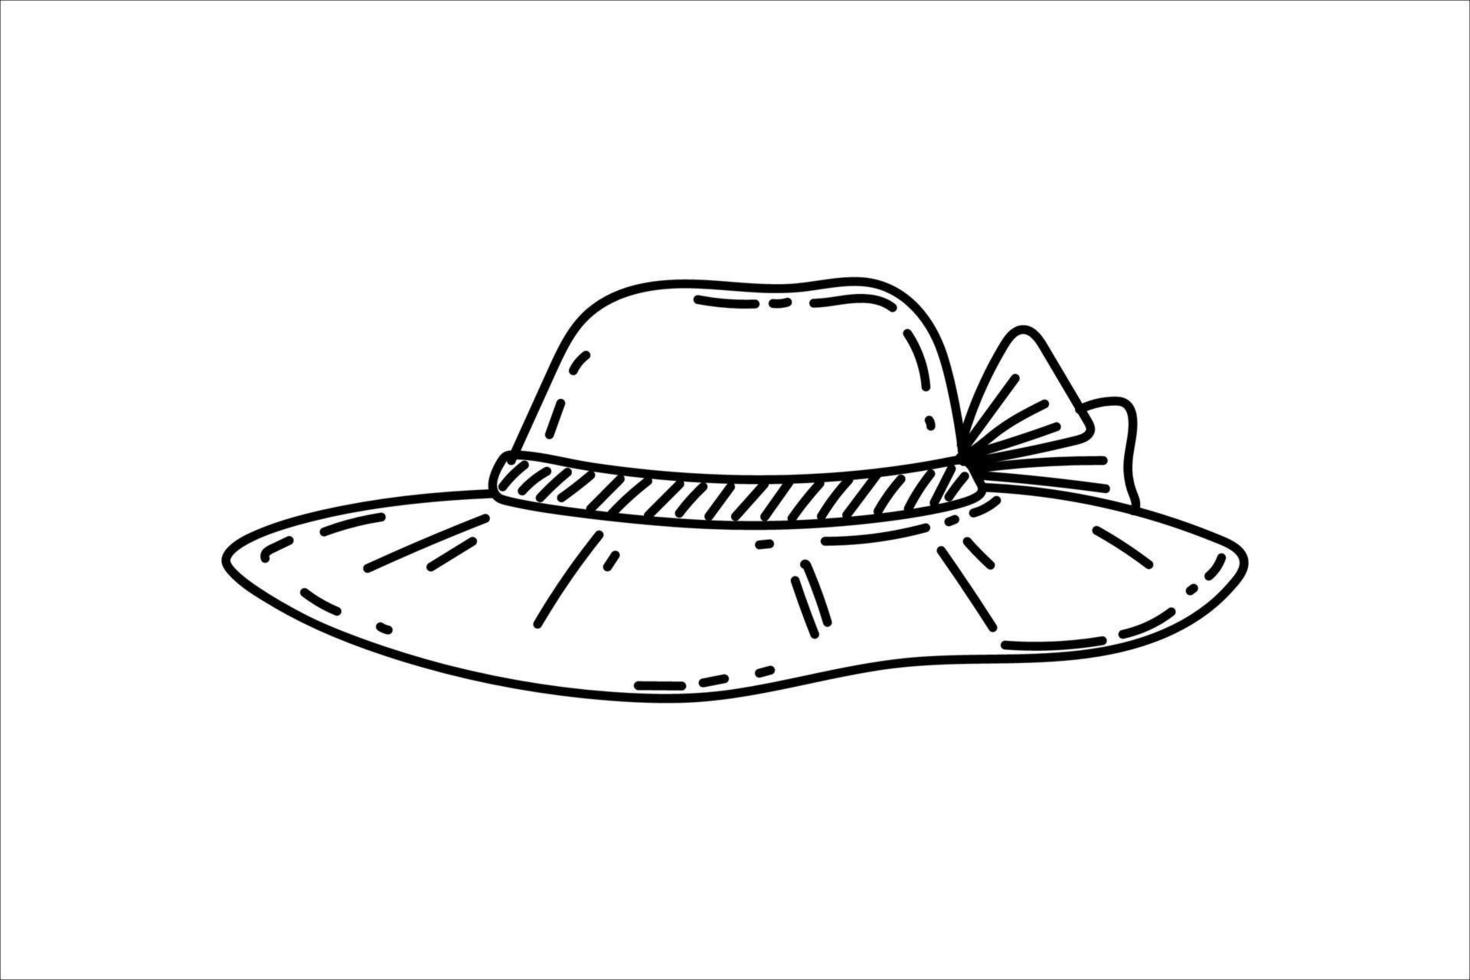 chapeau de paille de plage d'été. un accessoire féminin élégant. illustration vectorielle vintage dessinée à la main dans un style de croquis. dessin de contour noir isolé sur fond blanc vecteur